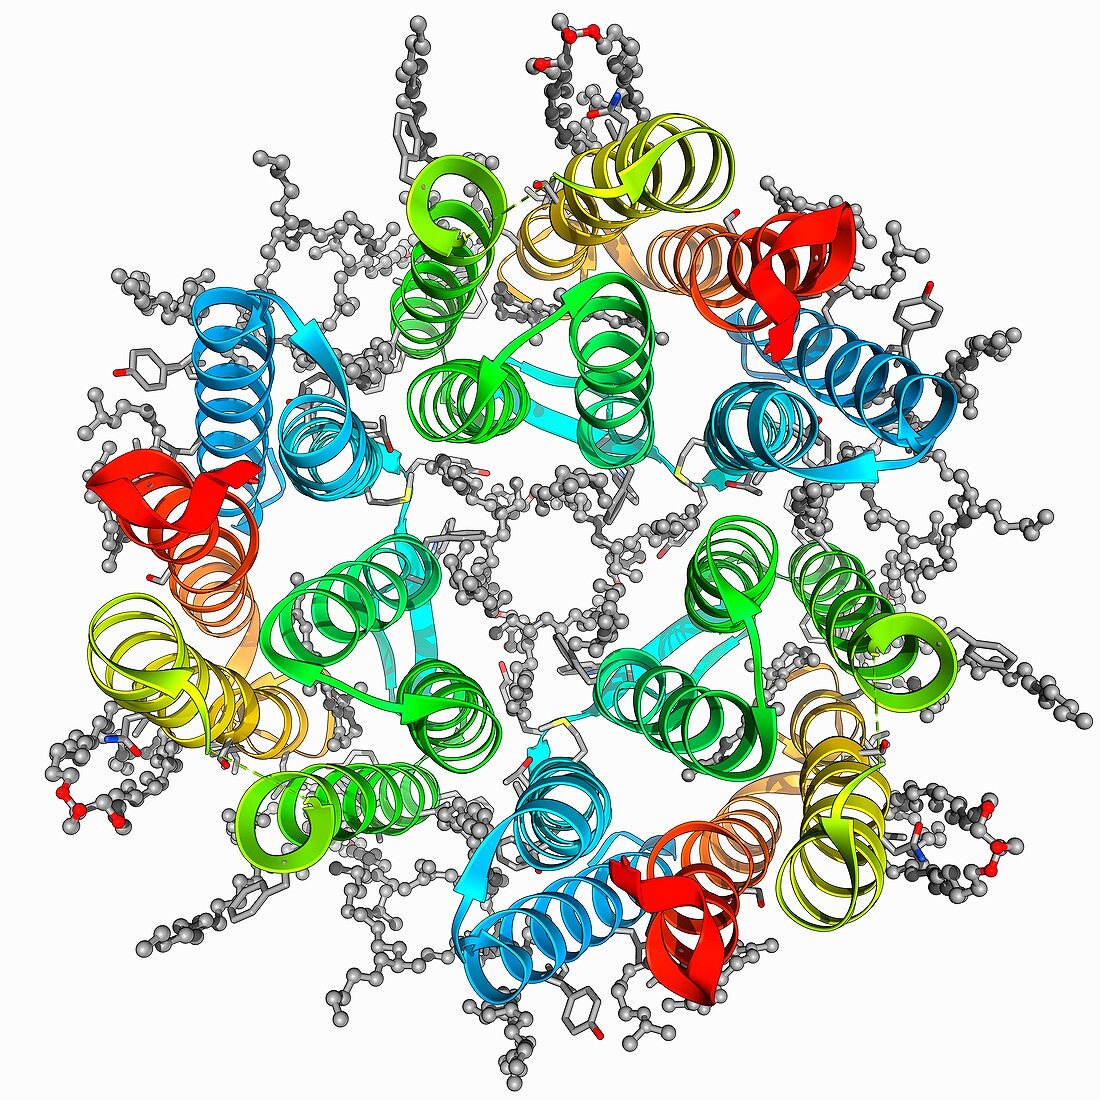 Bacteriorhodopsin protein